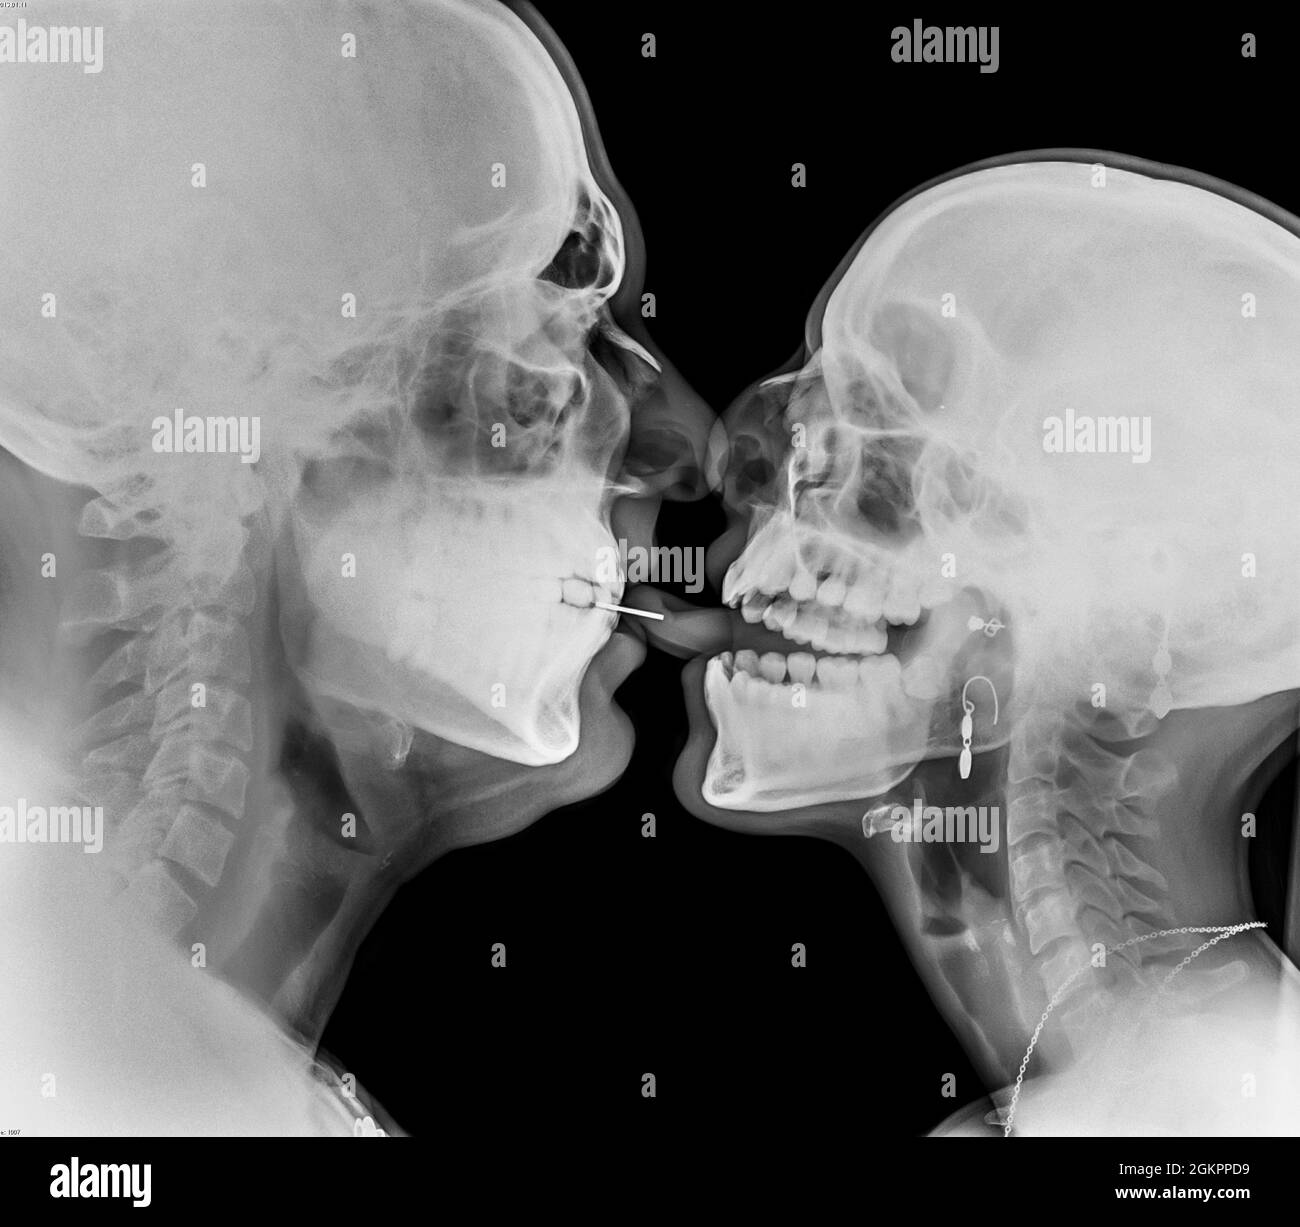 Coppia baciante. Due persone che baciano sotto la lingua traforata dai raggi X. Foto Stock